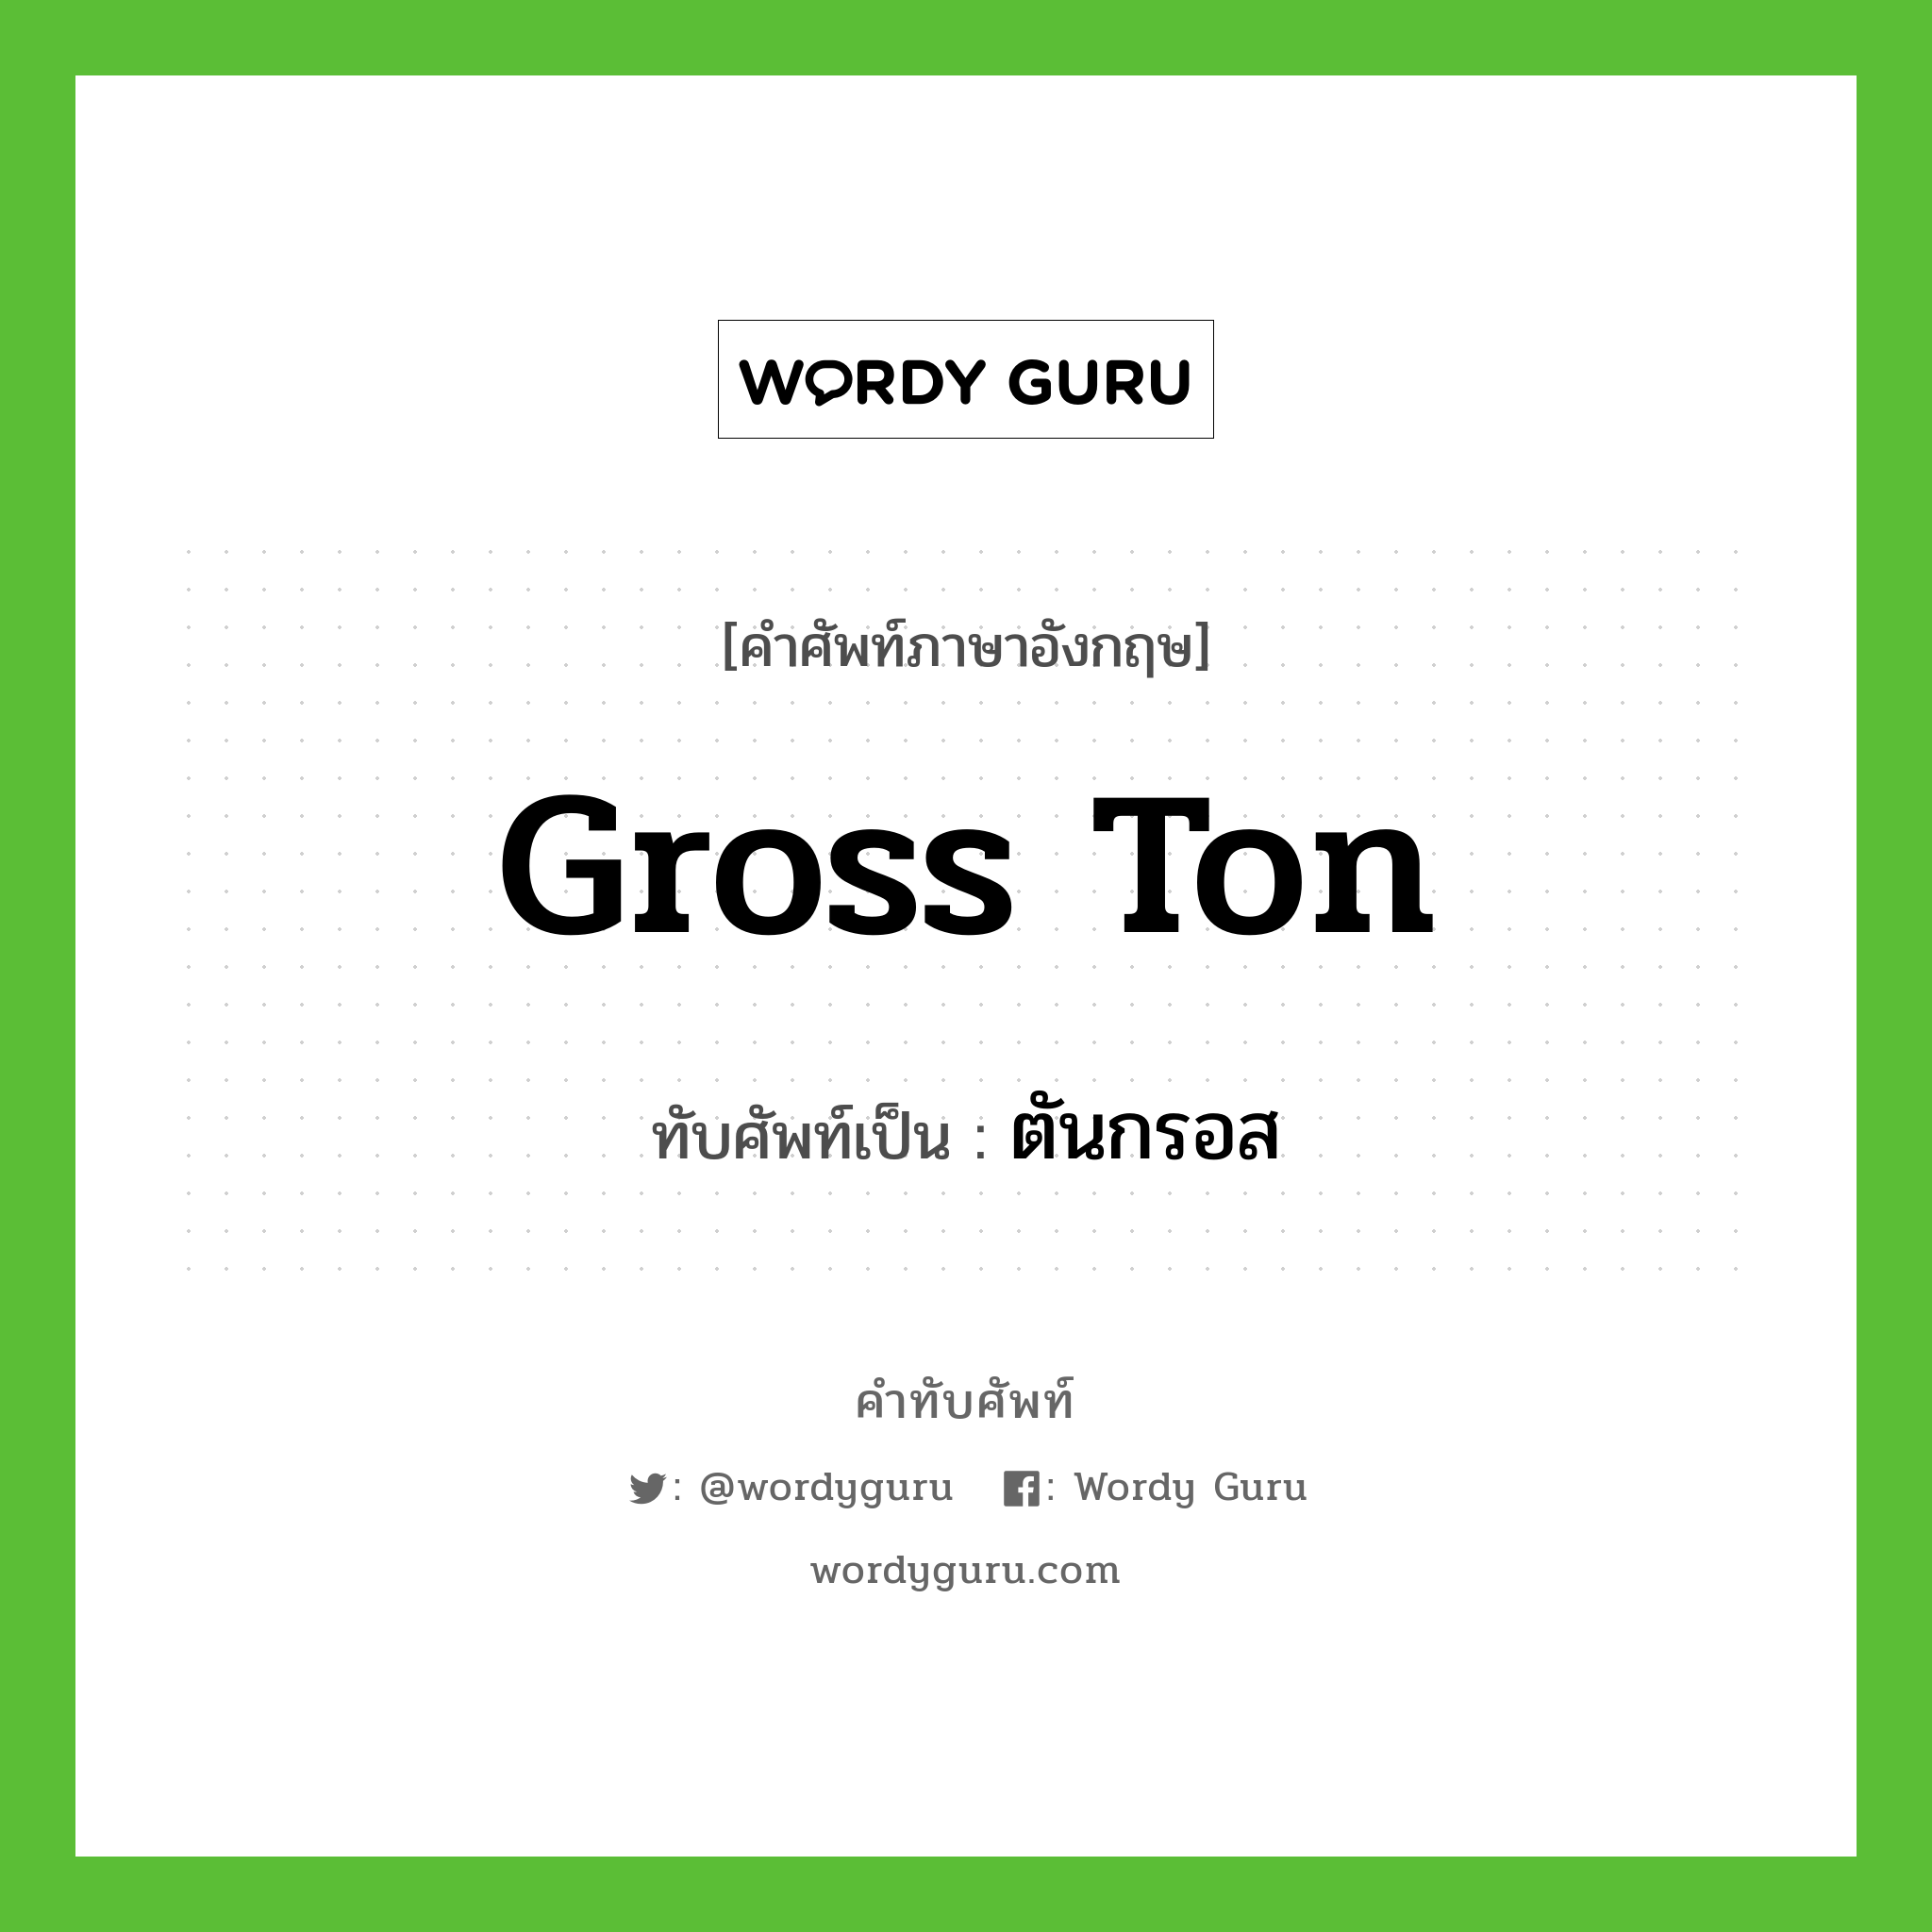 gross ton เขียนเป็นคำไทยว่าอะไร?, คำศัพท์ภาษาอังกฤษ gross ton ทับศัพท์เป็น ตันกรอส